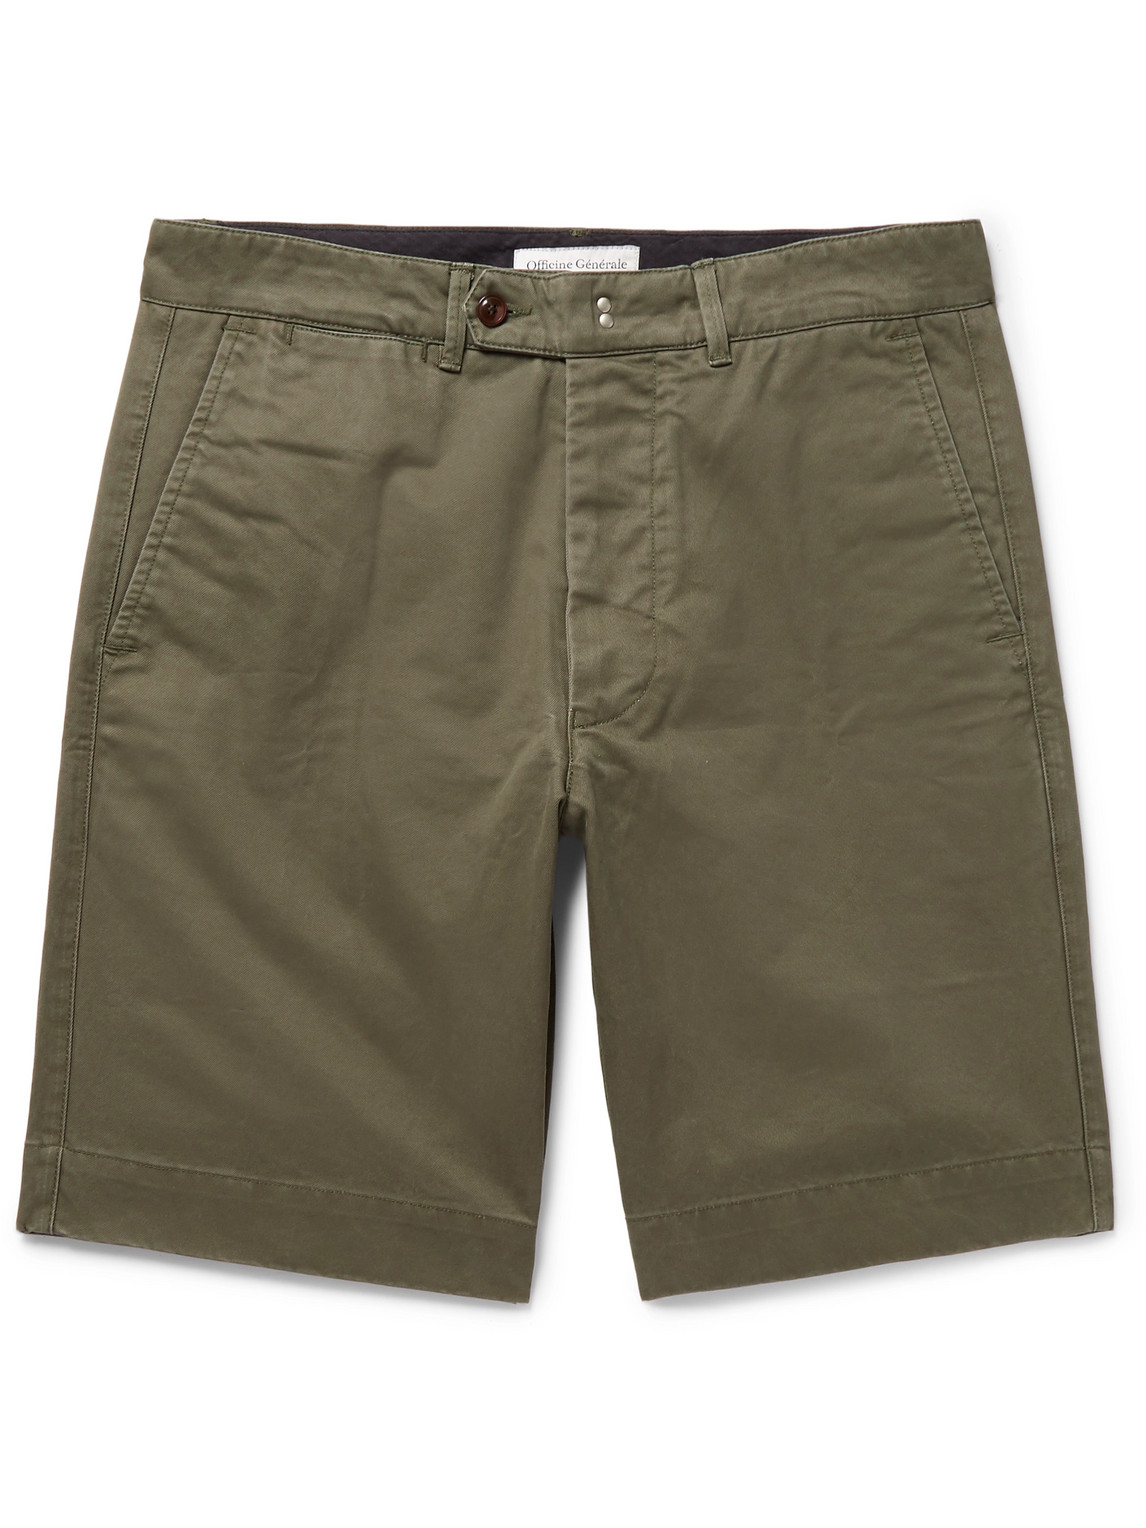 Officine Générale Fisherman Cotton-Twill Shorts